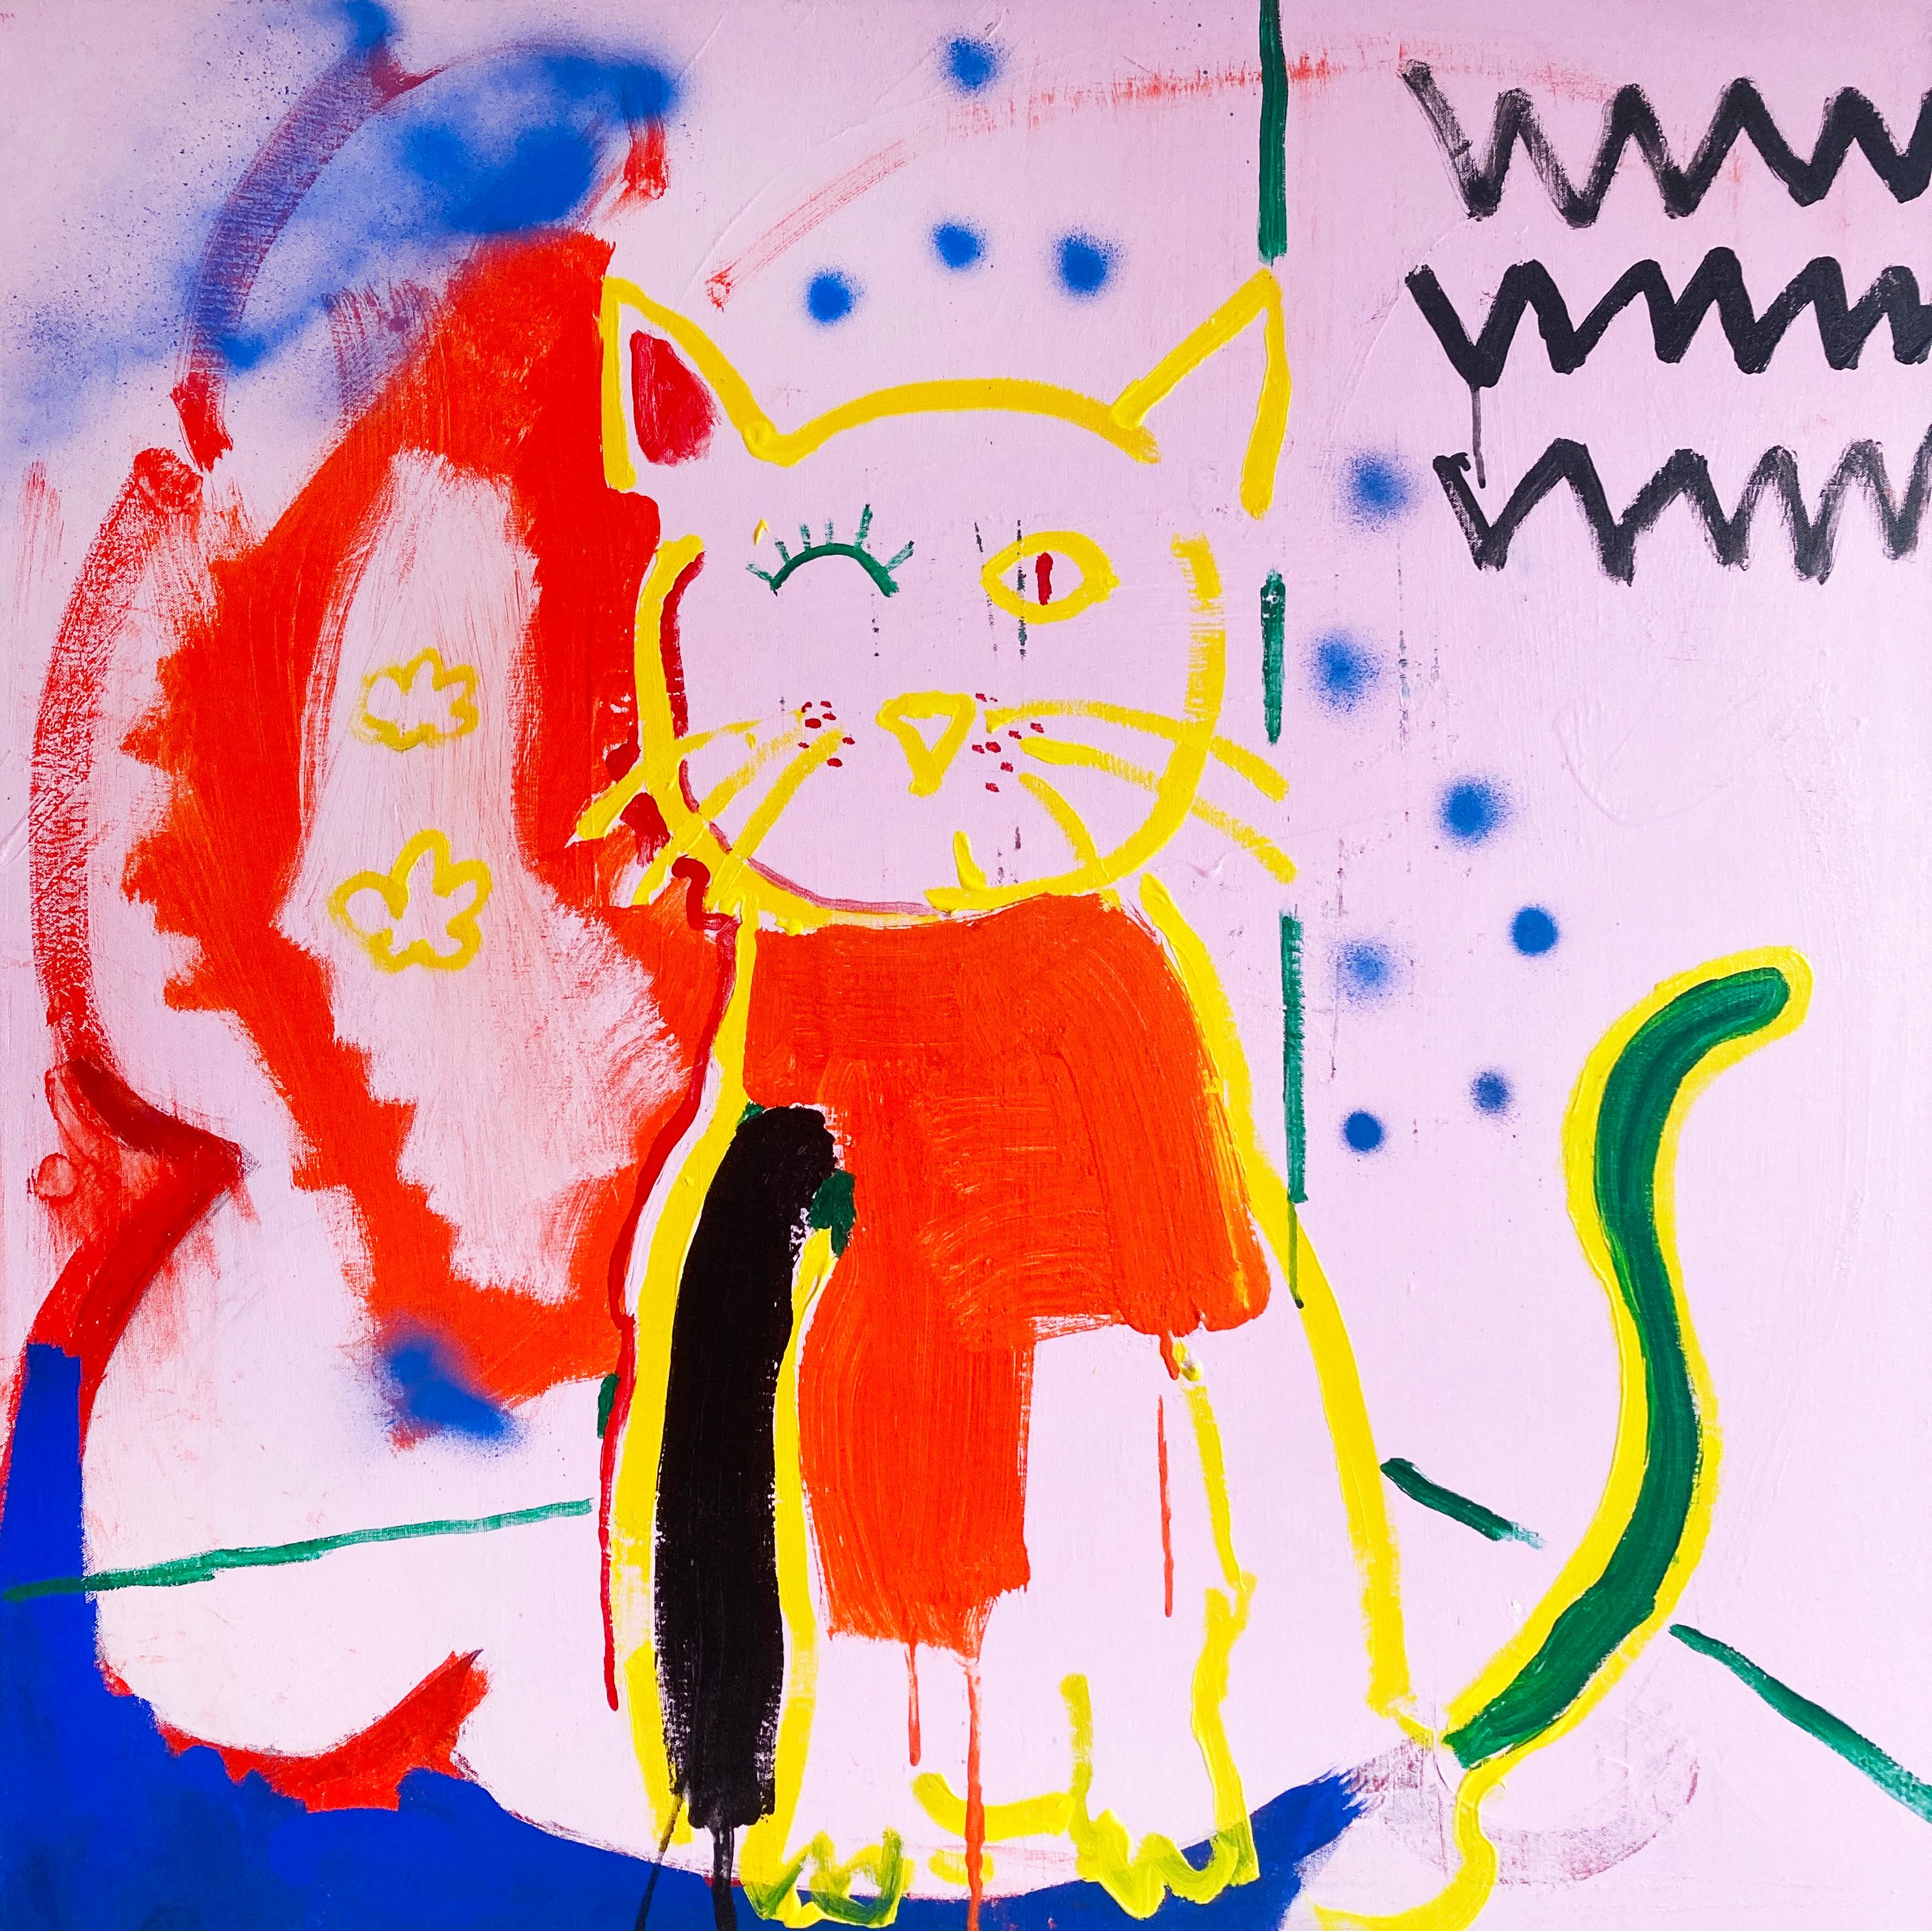 Matt Higgins Animal Painting – Zwinkernde Katze - Zeitgenössische Pop-Art-Malerei